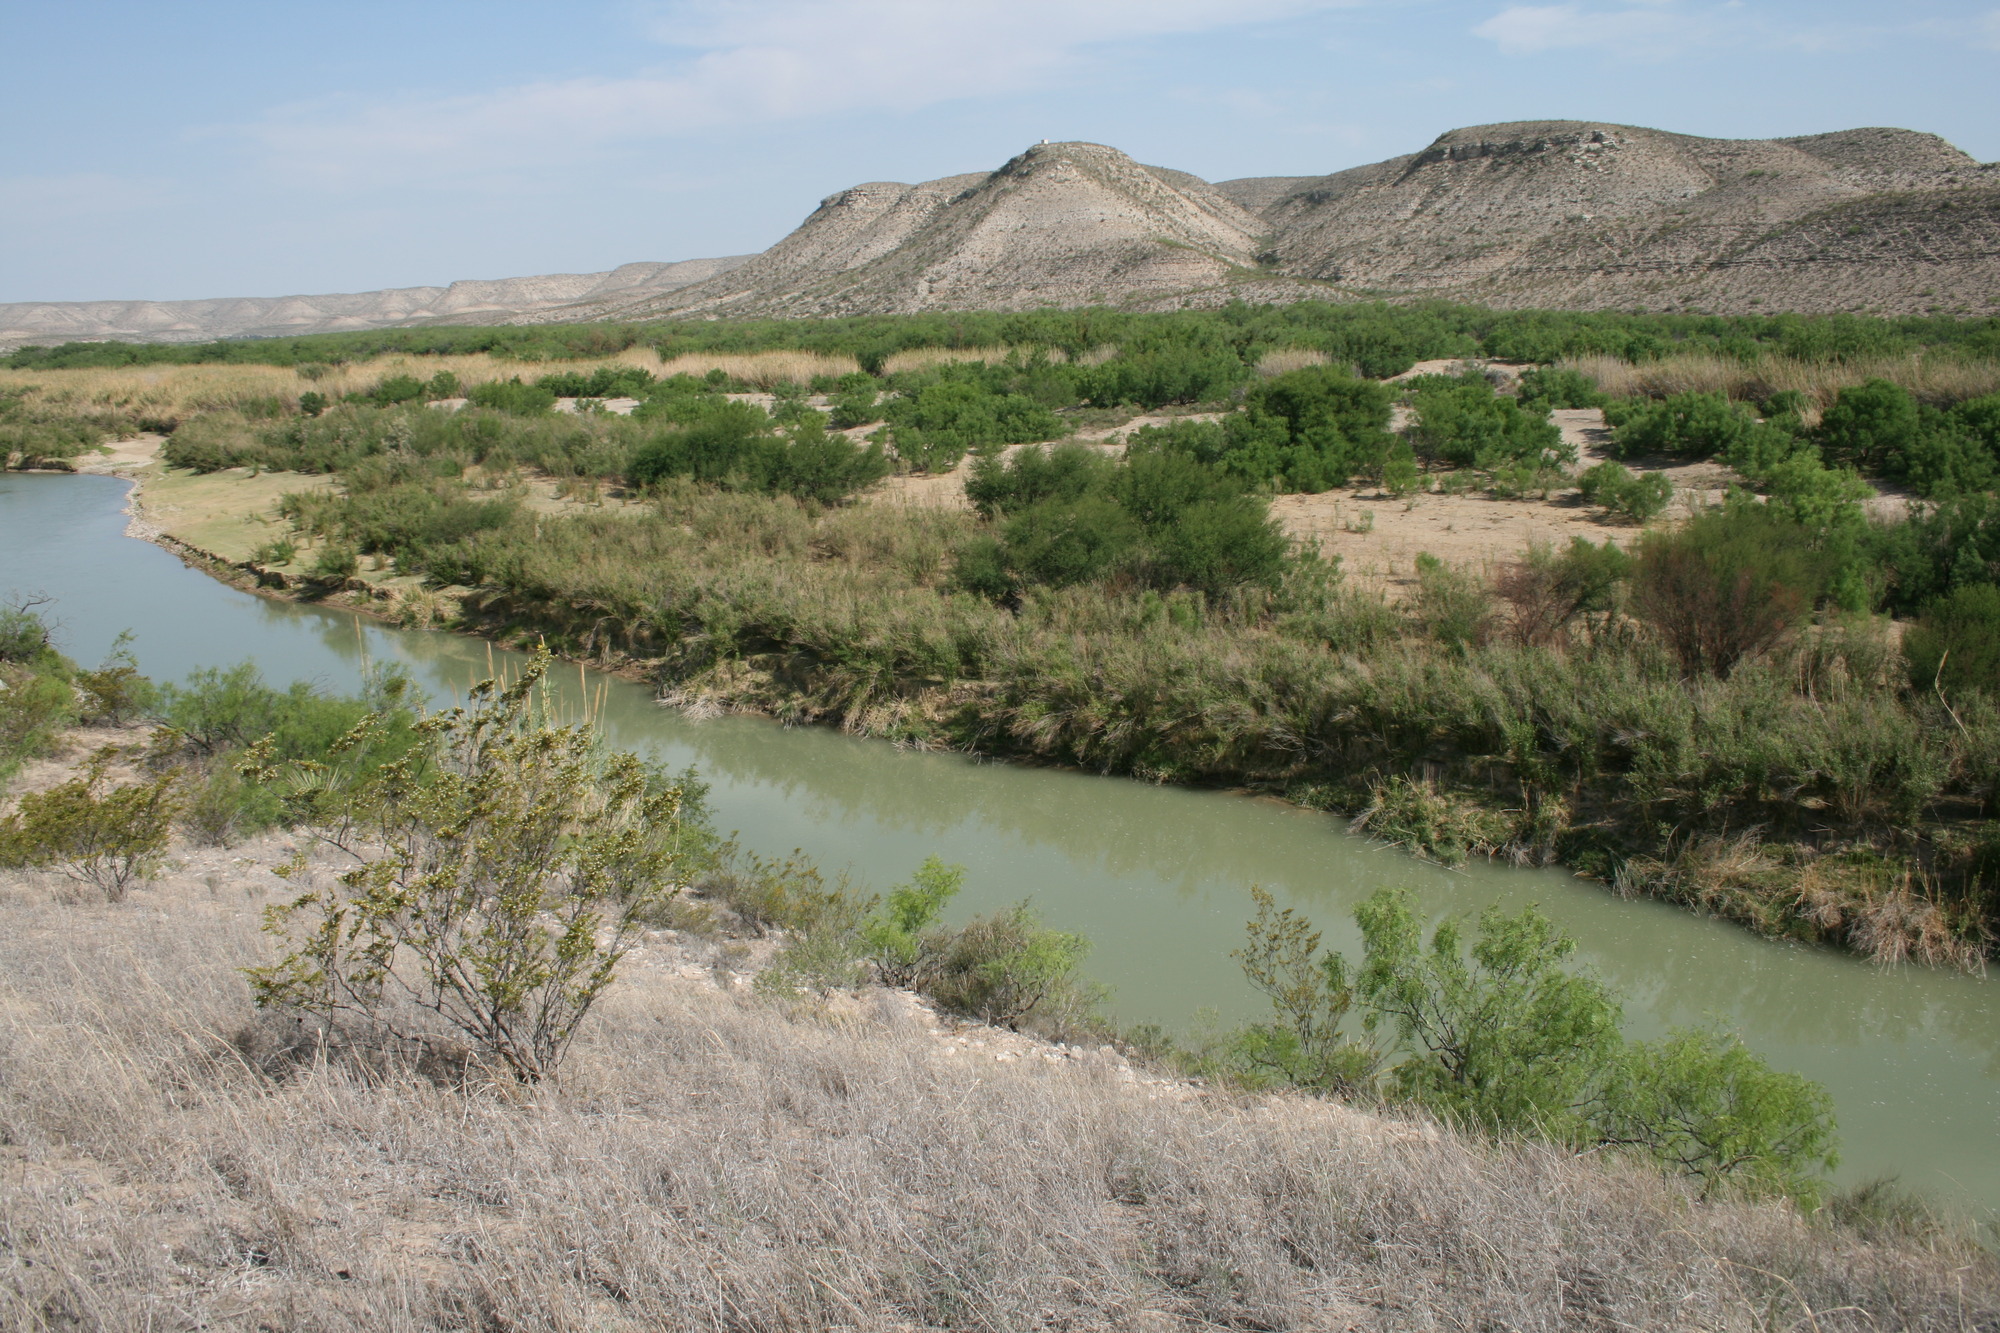 Photo of the Rio Grande